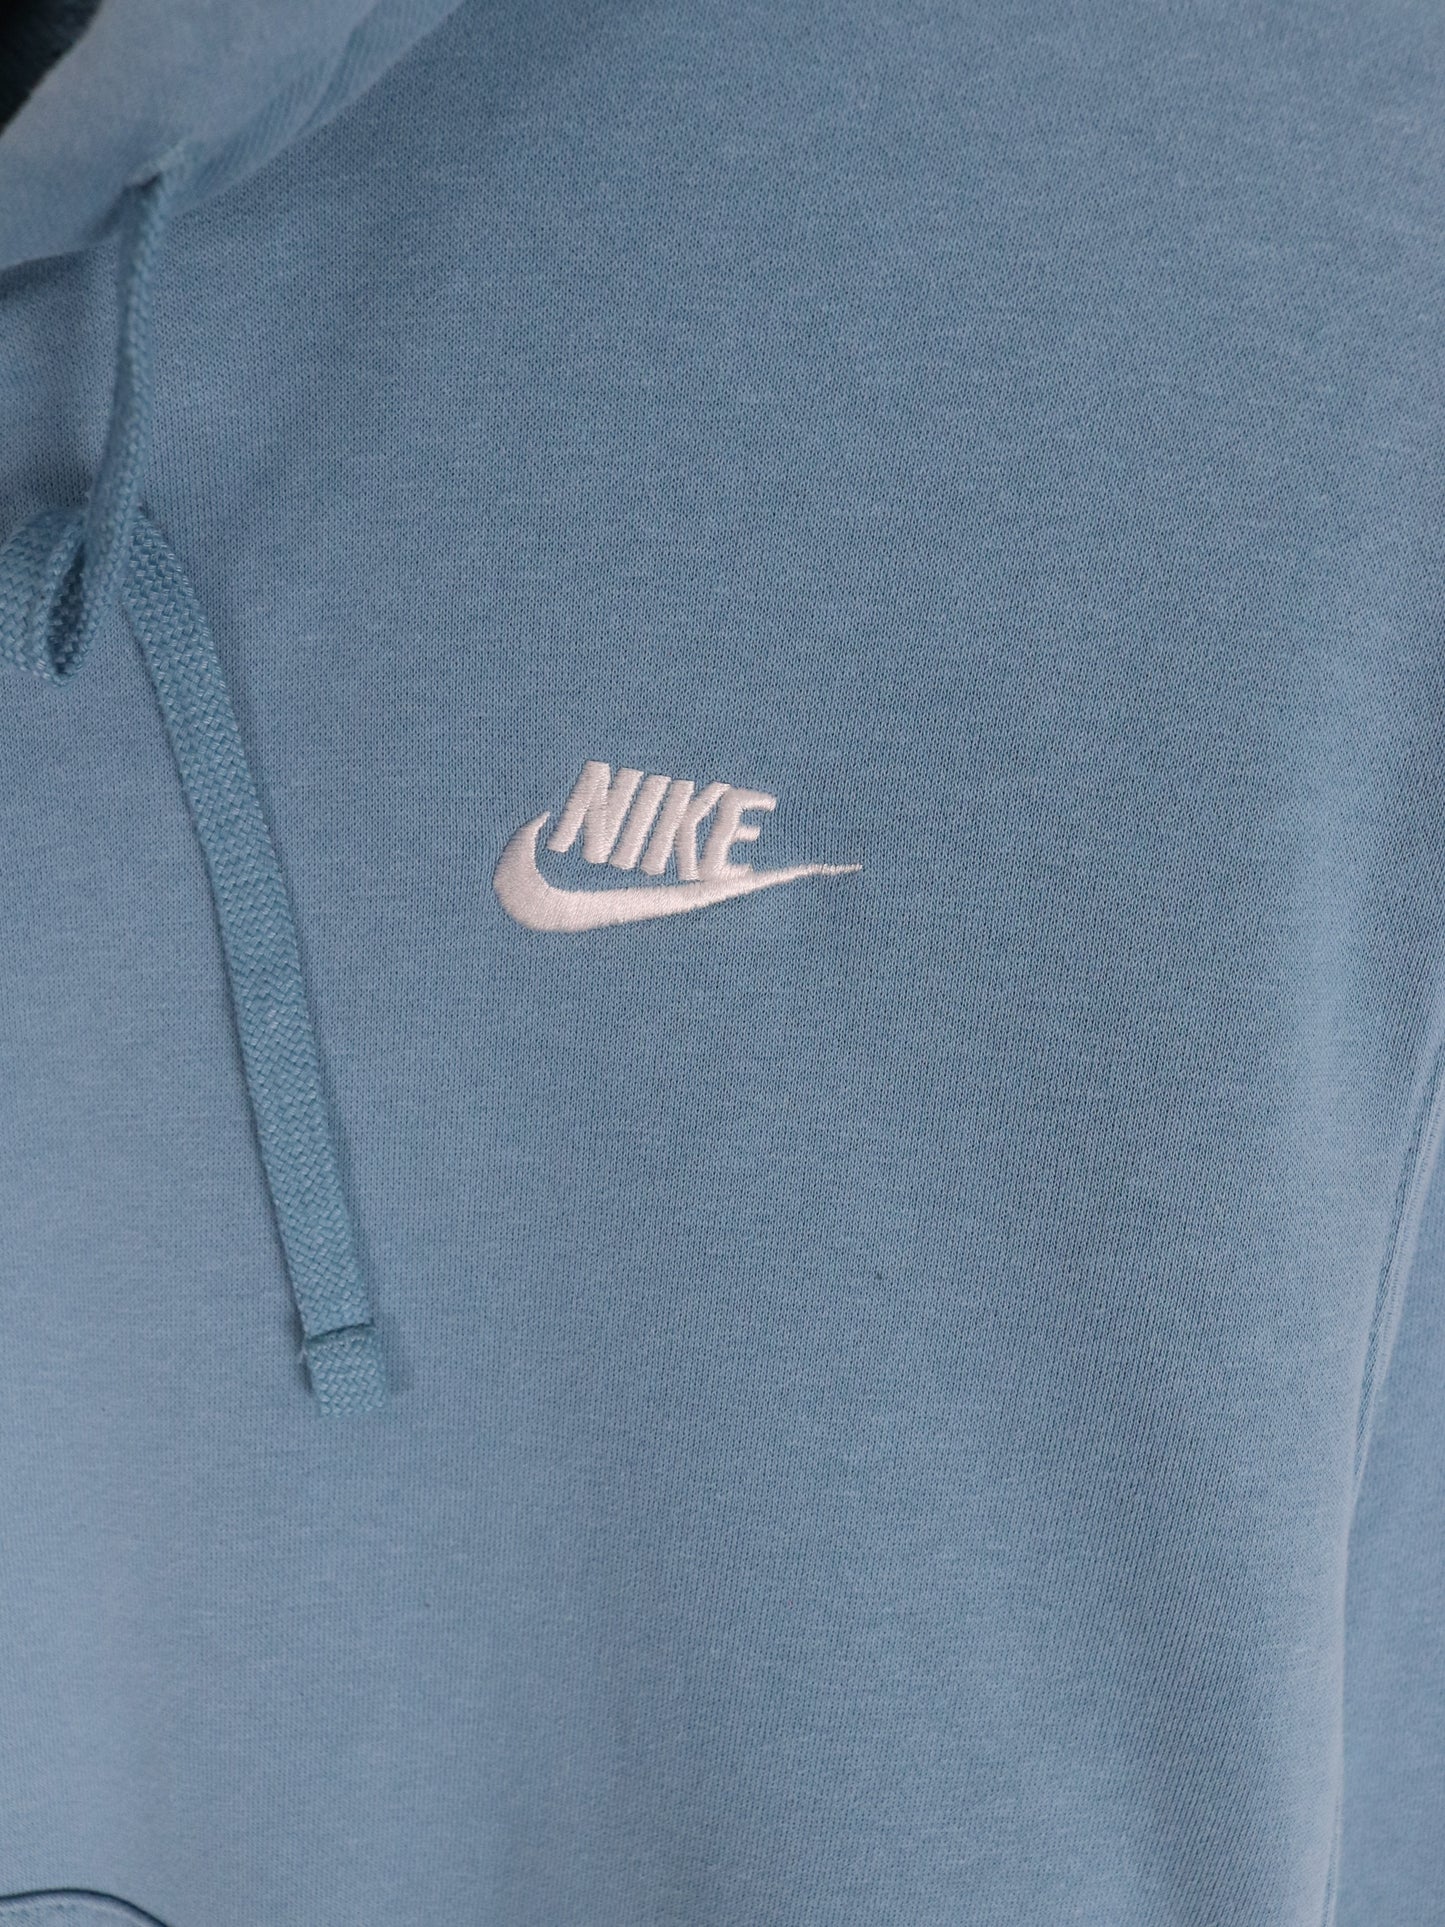 Nike Sweatshirt Mens Small Blue Swoosh Hoodie